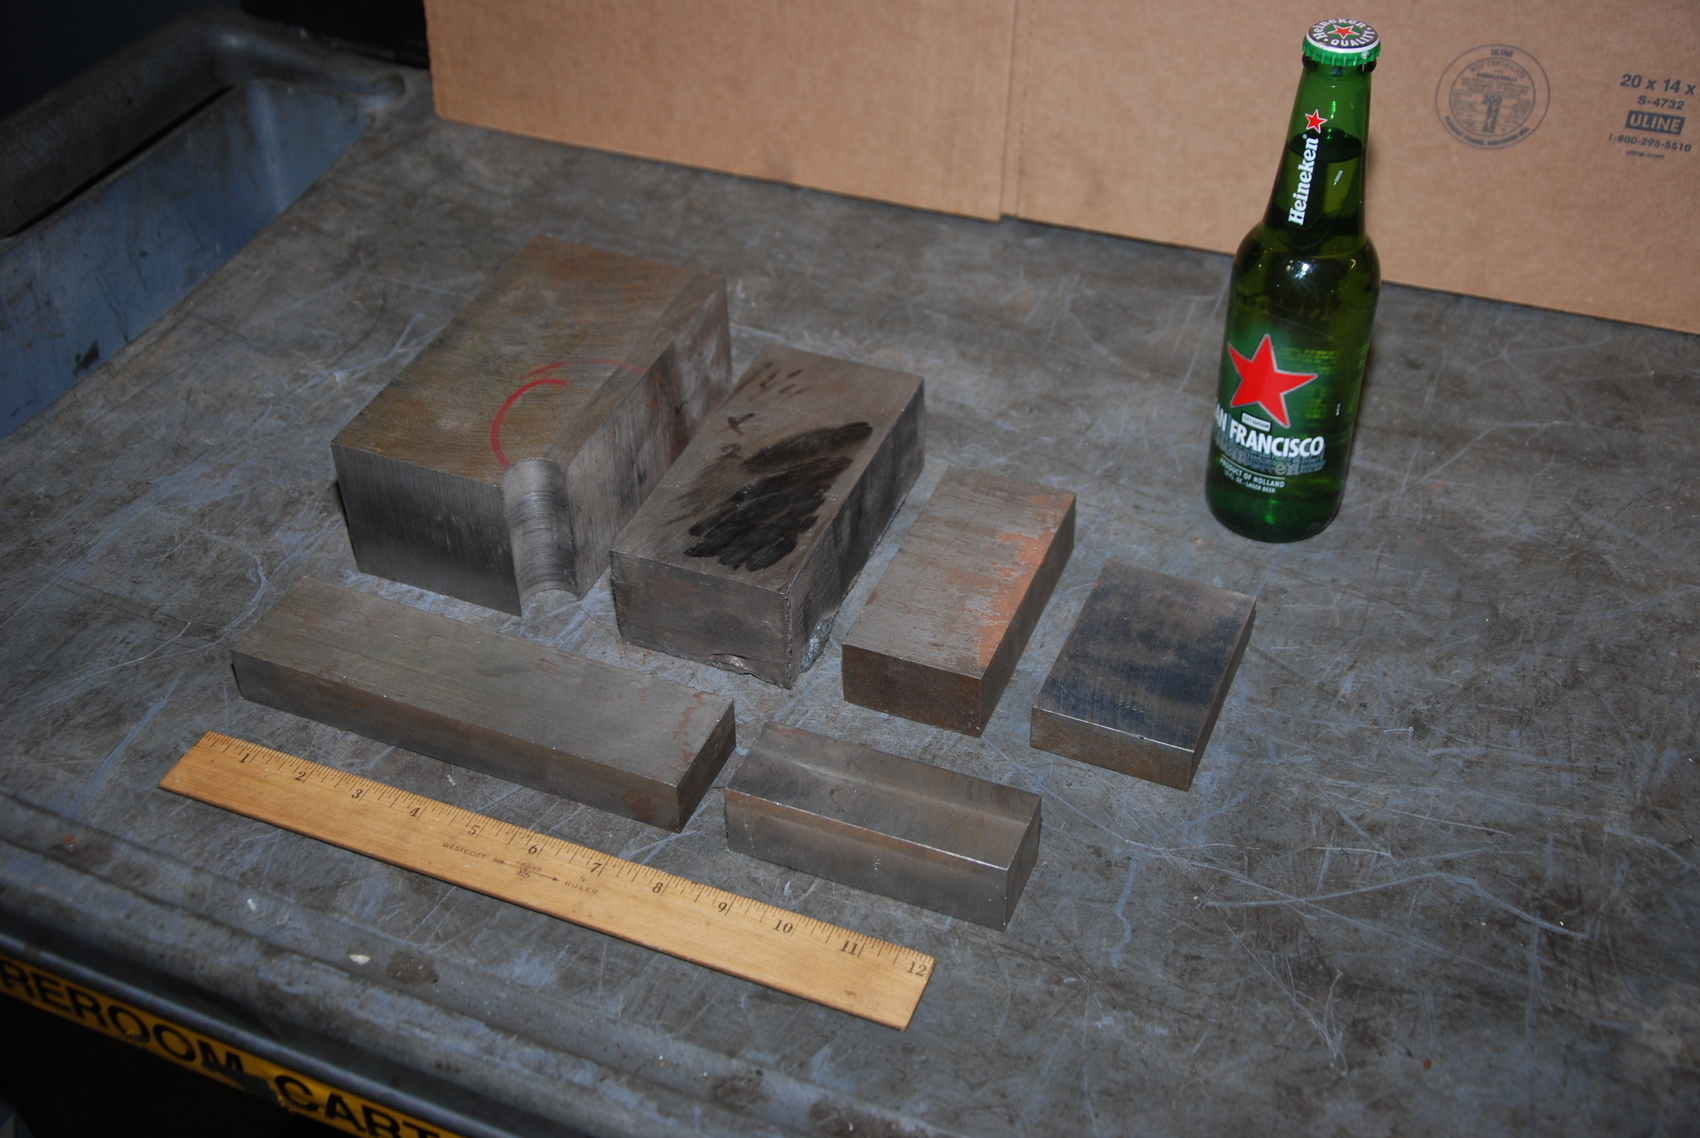 Lot of 6 8620 steel Rectangular Bars for blacksmith anvil,45 lbs